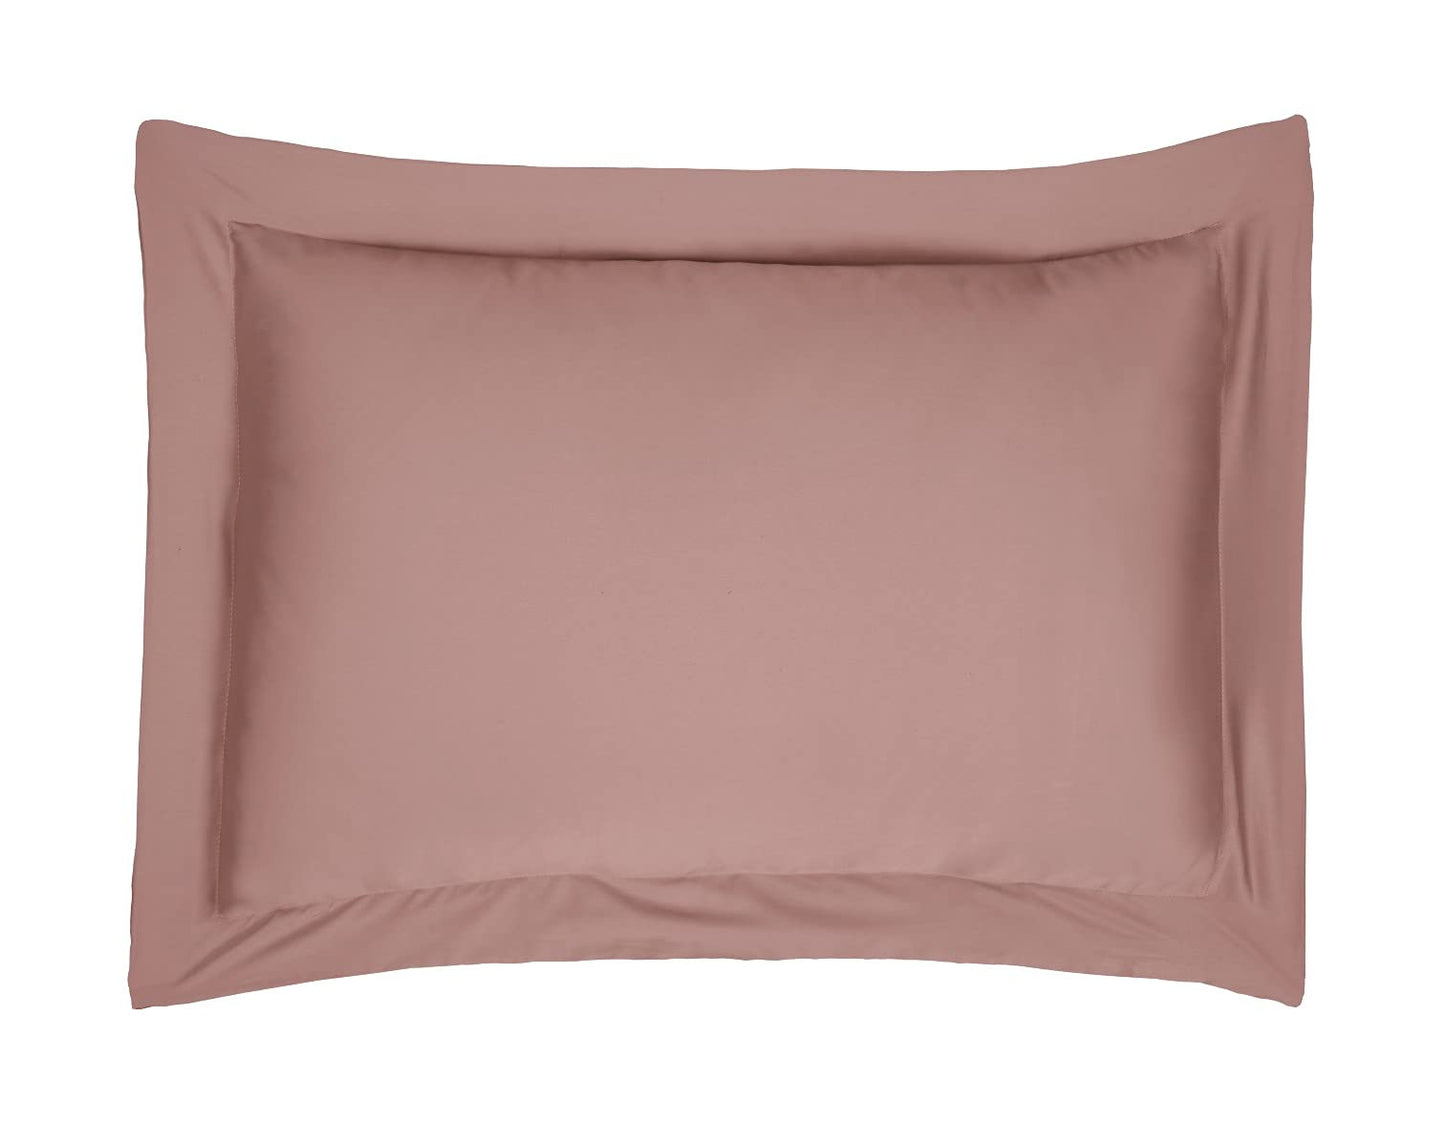 100% Cotton, 300 Thread Count - Oxford Pillowcase Pair